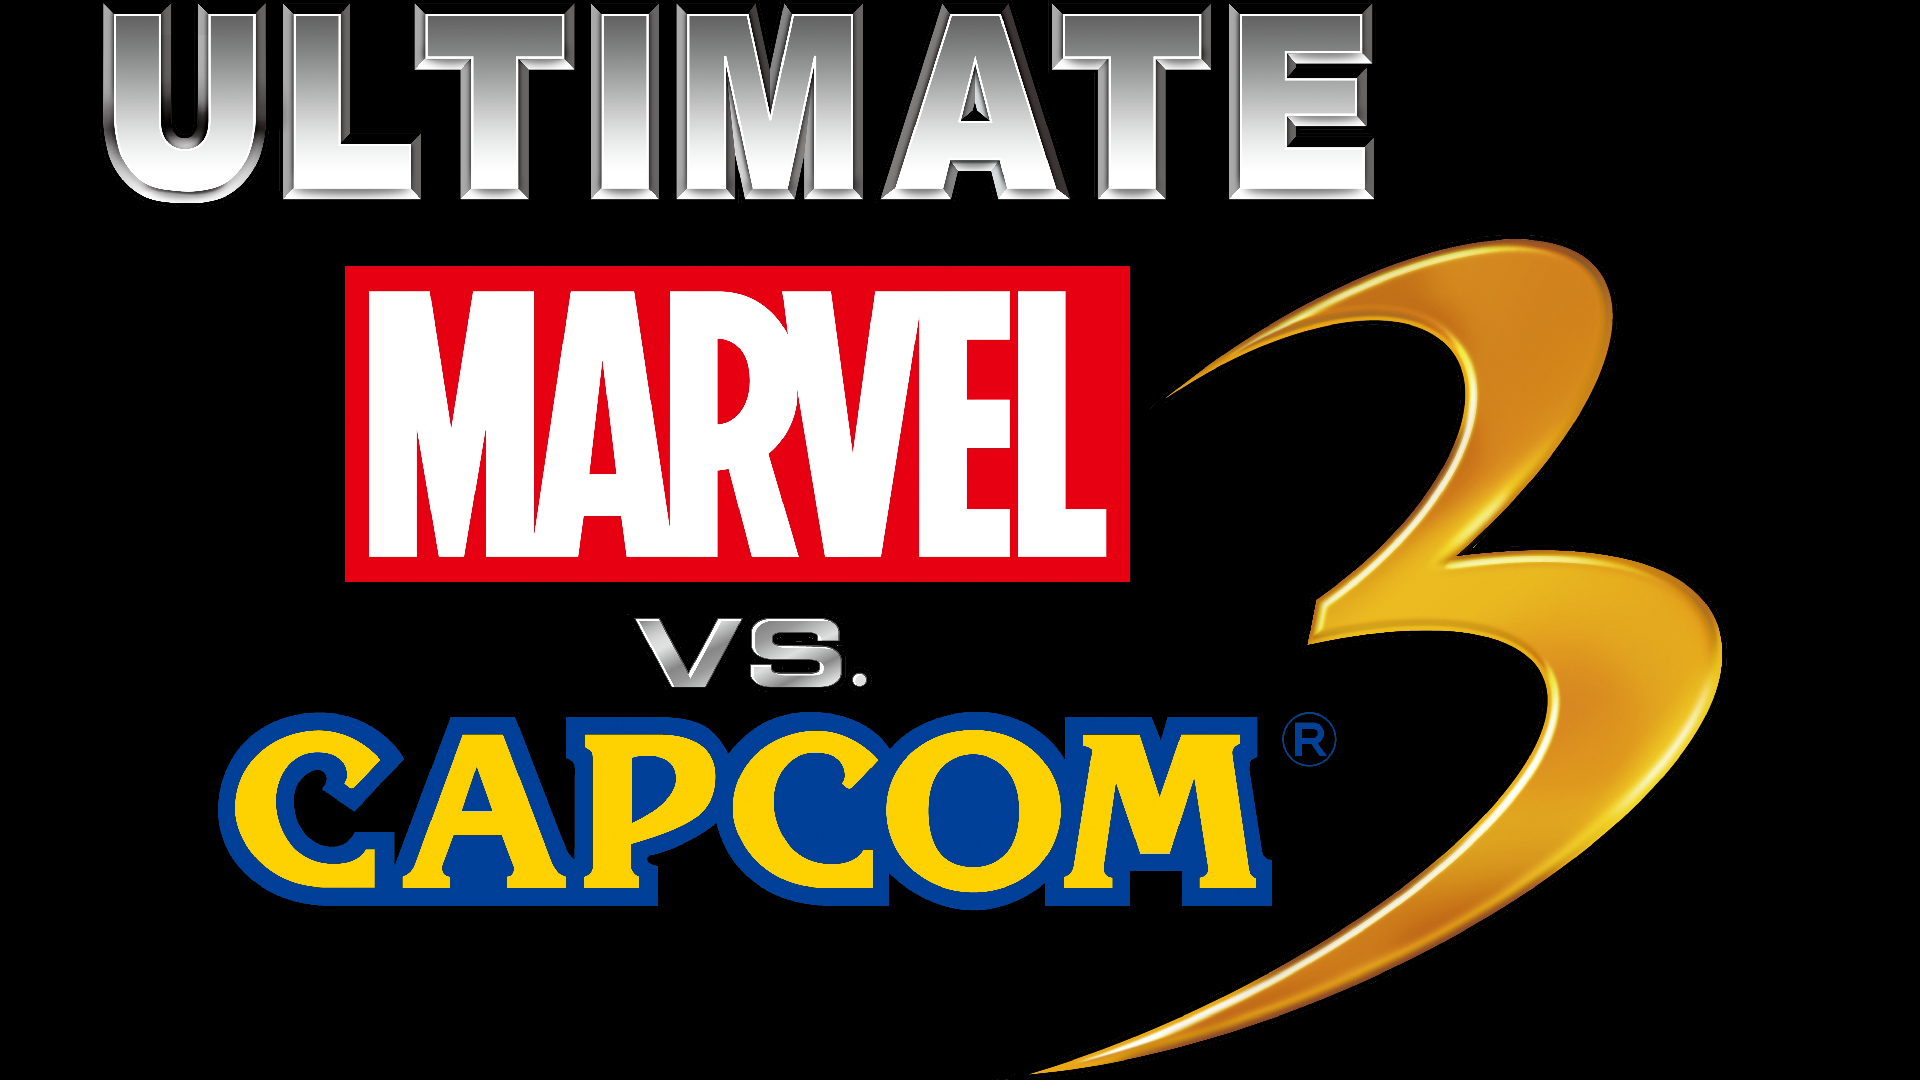 Ultimate Marvel vs. Capcom 3 Logo